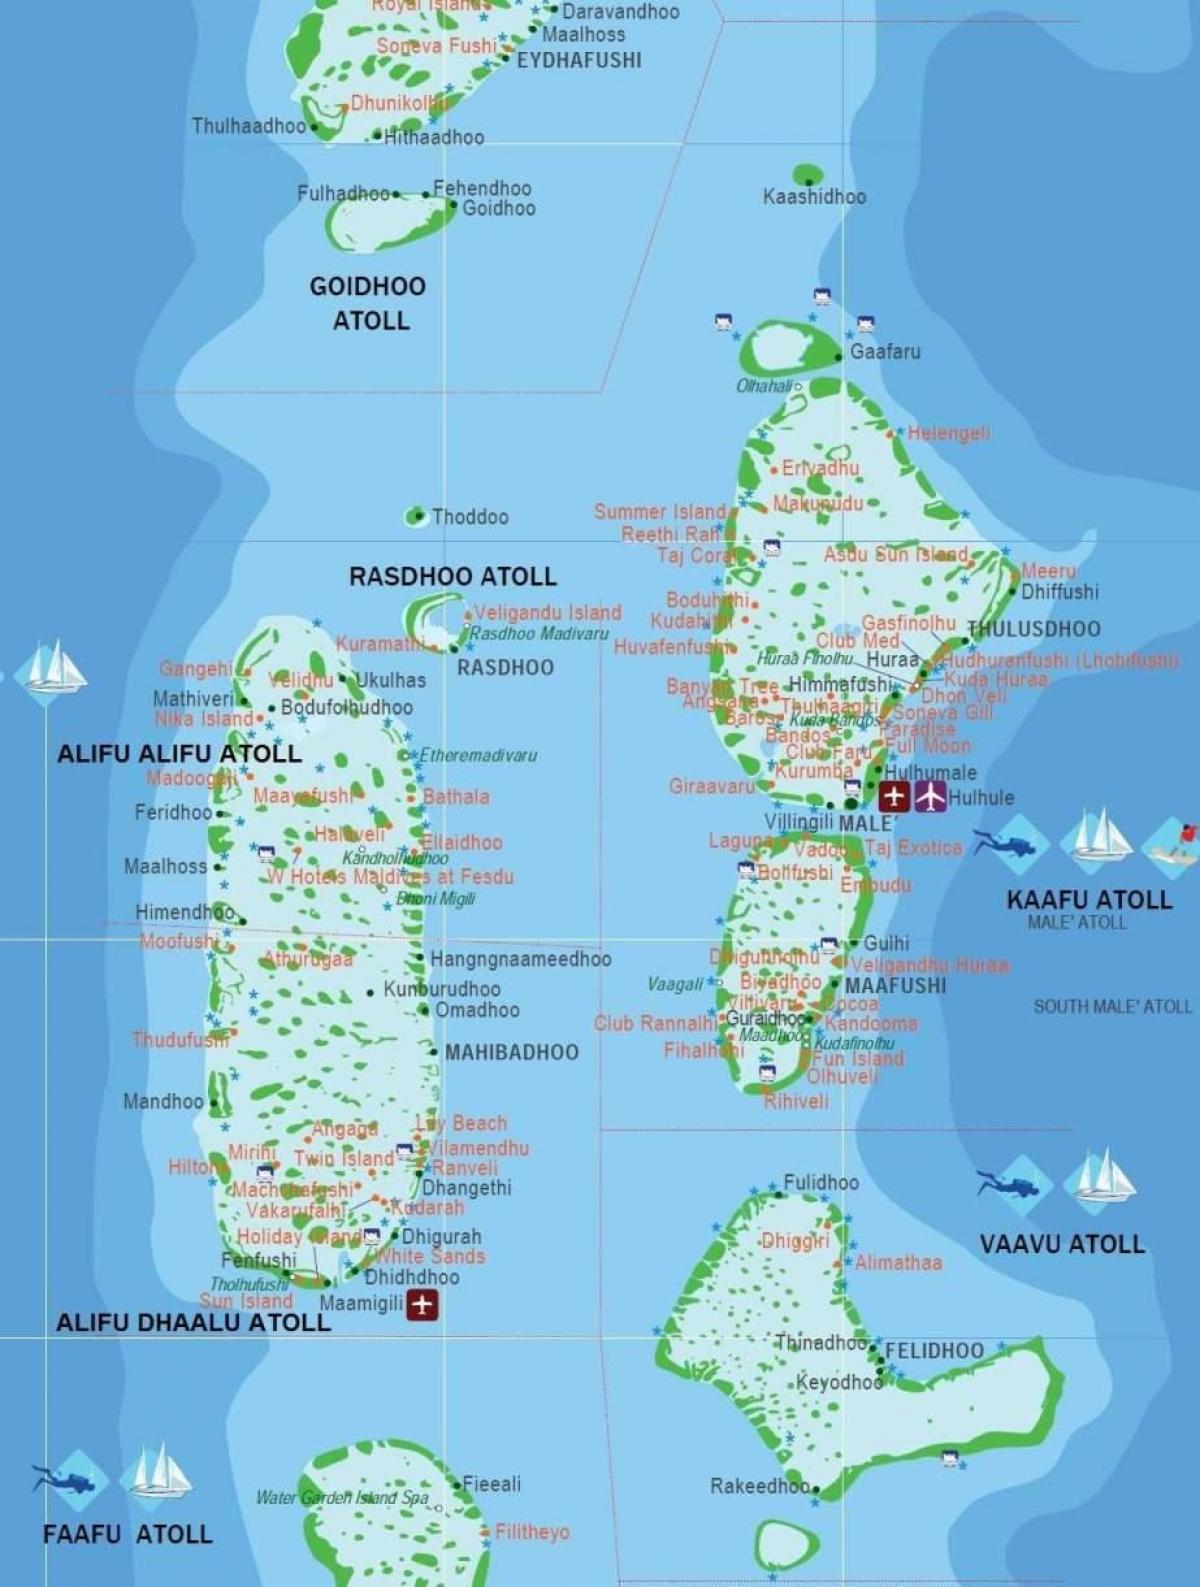 马尔代夫国家在世界地图